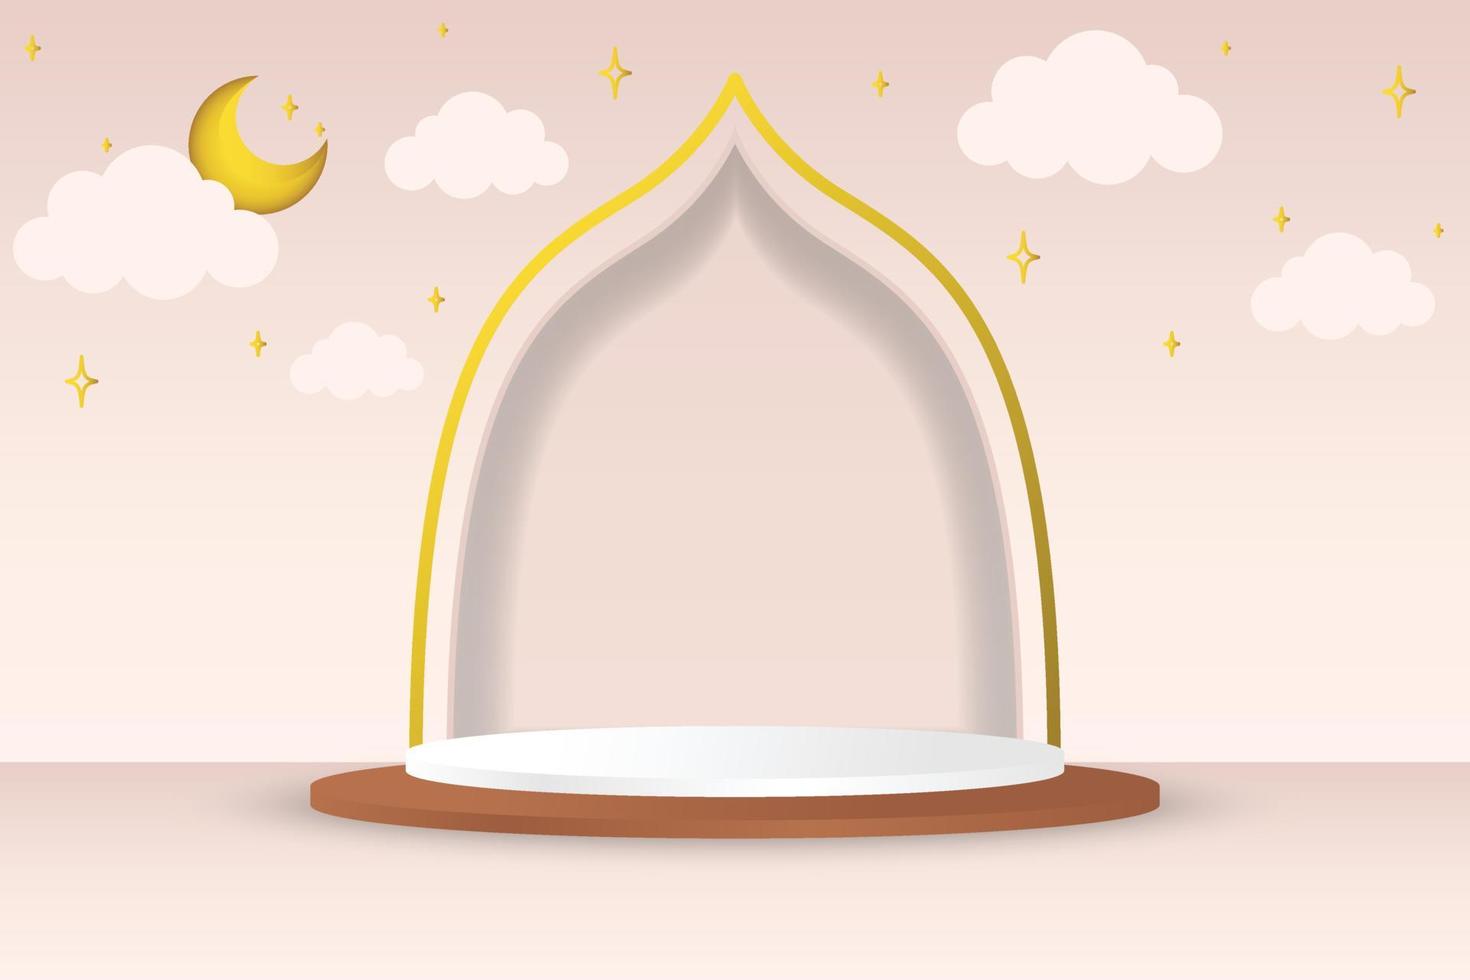 3d modern islamisch Urlaub Banner zum Ramadan. Podium mit Halbmond Mond, Sterne und Wolken. Vektor Illustration.